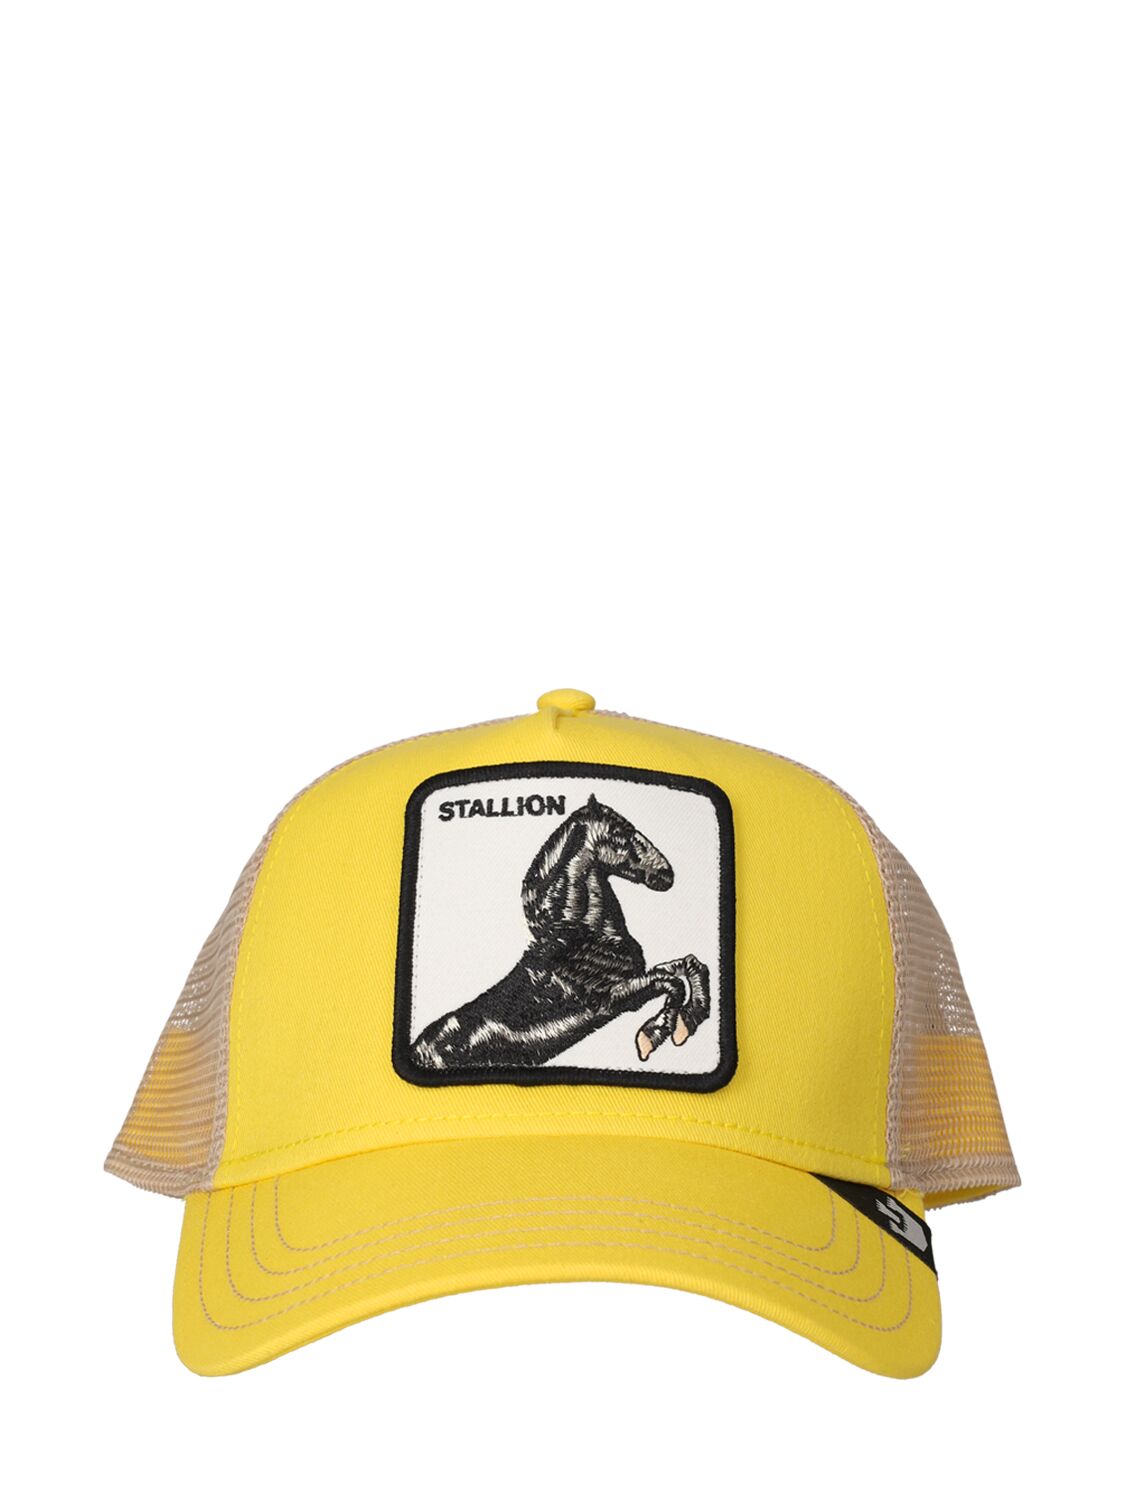 The Stallion Trucker Hat W/patch